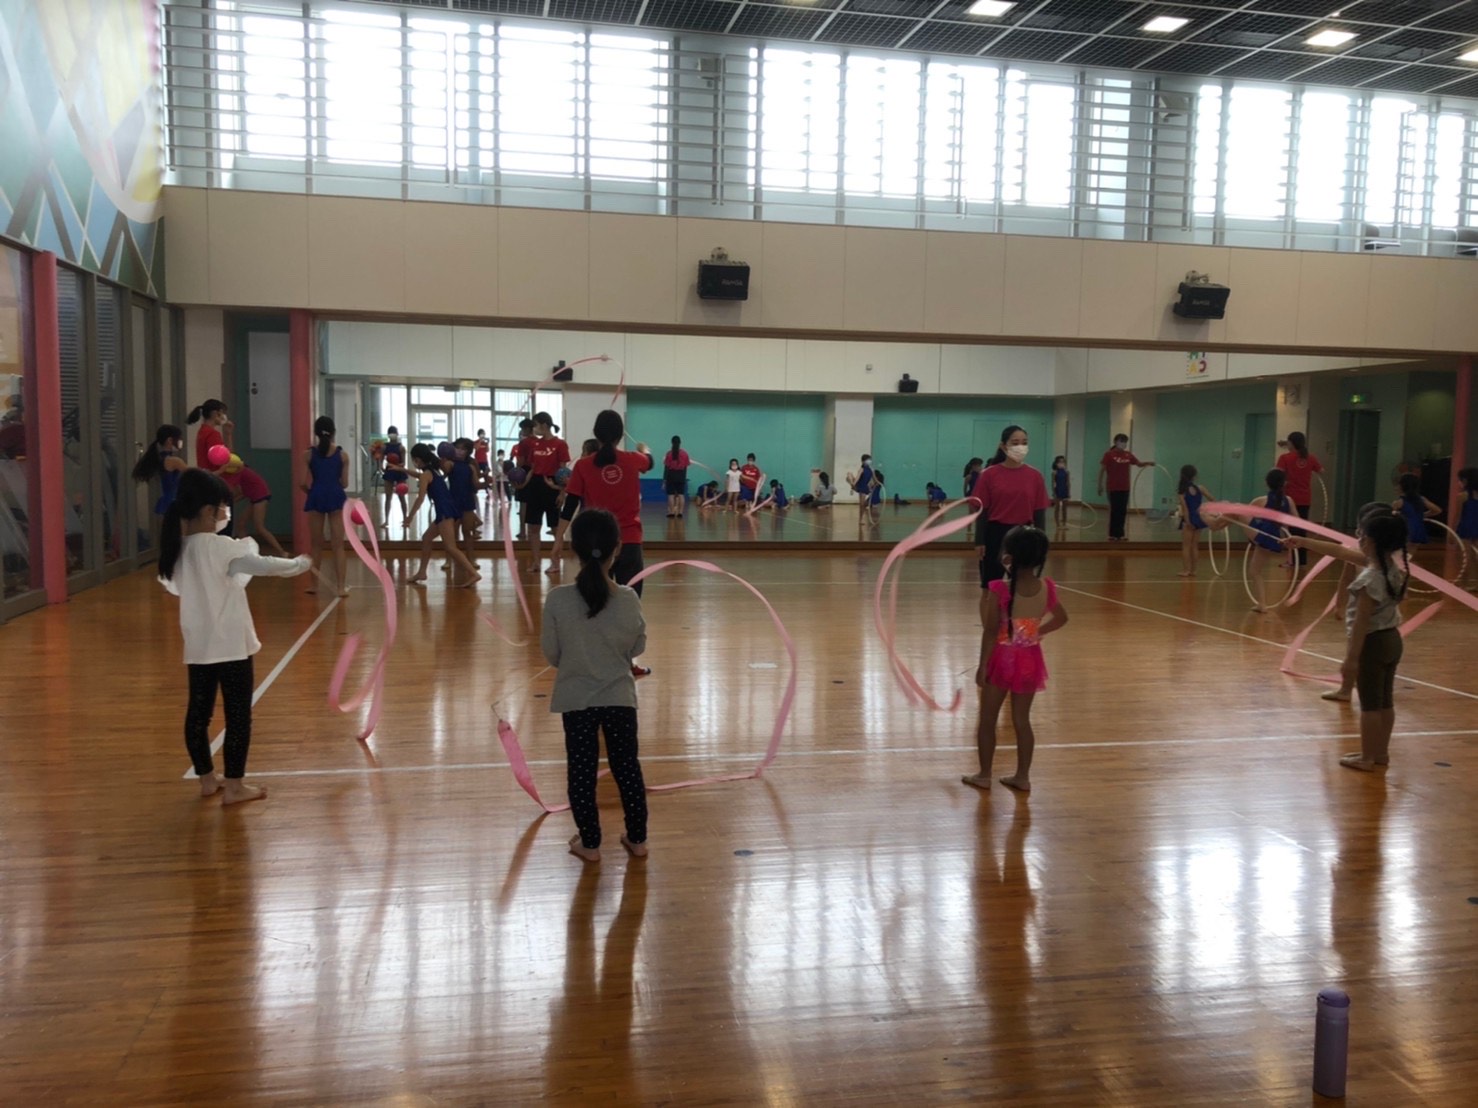 湘南とつかｙｍｃａｙｍｃａとつか学童クラブ 公式ブログ 湘南とつかymcaウエルネススポーツクラブ 新体操クラスの様子